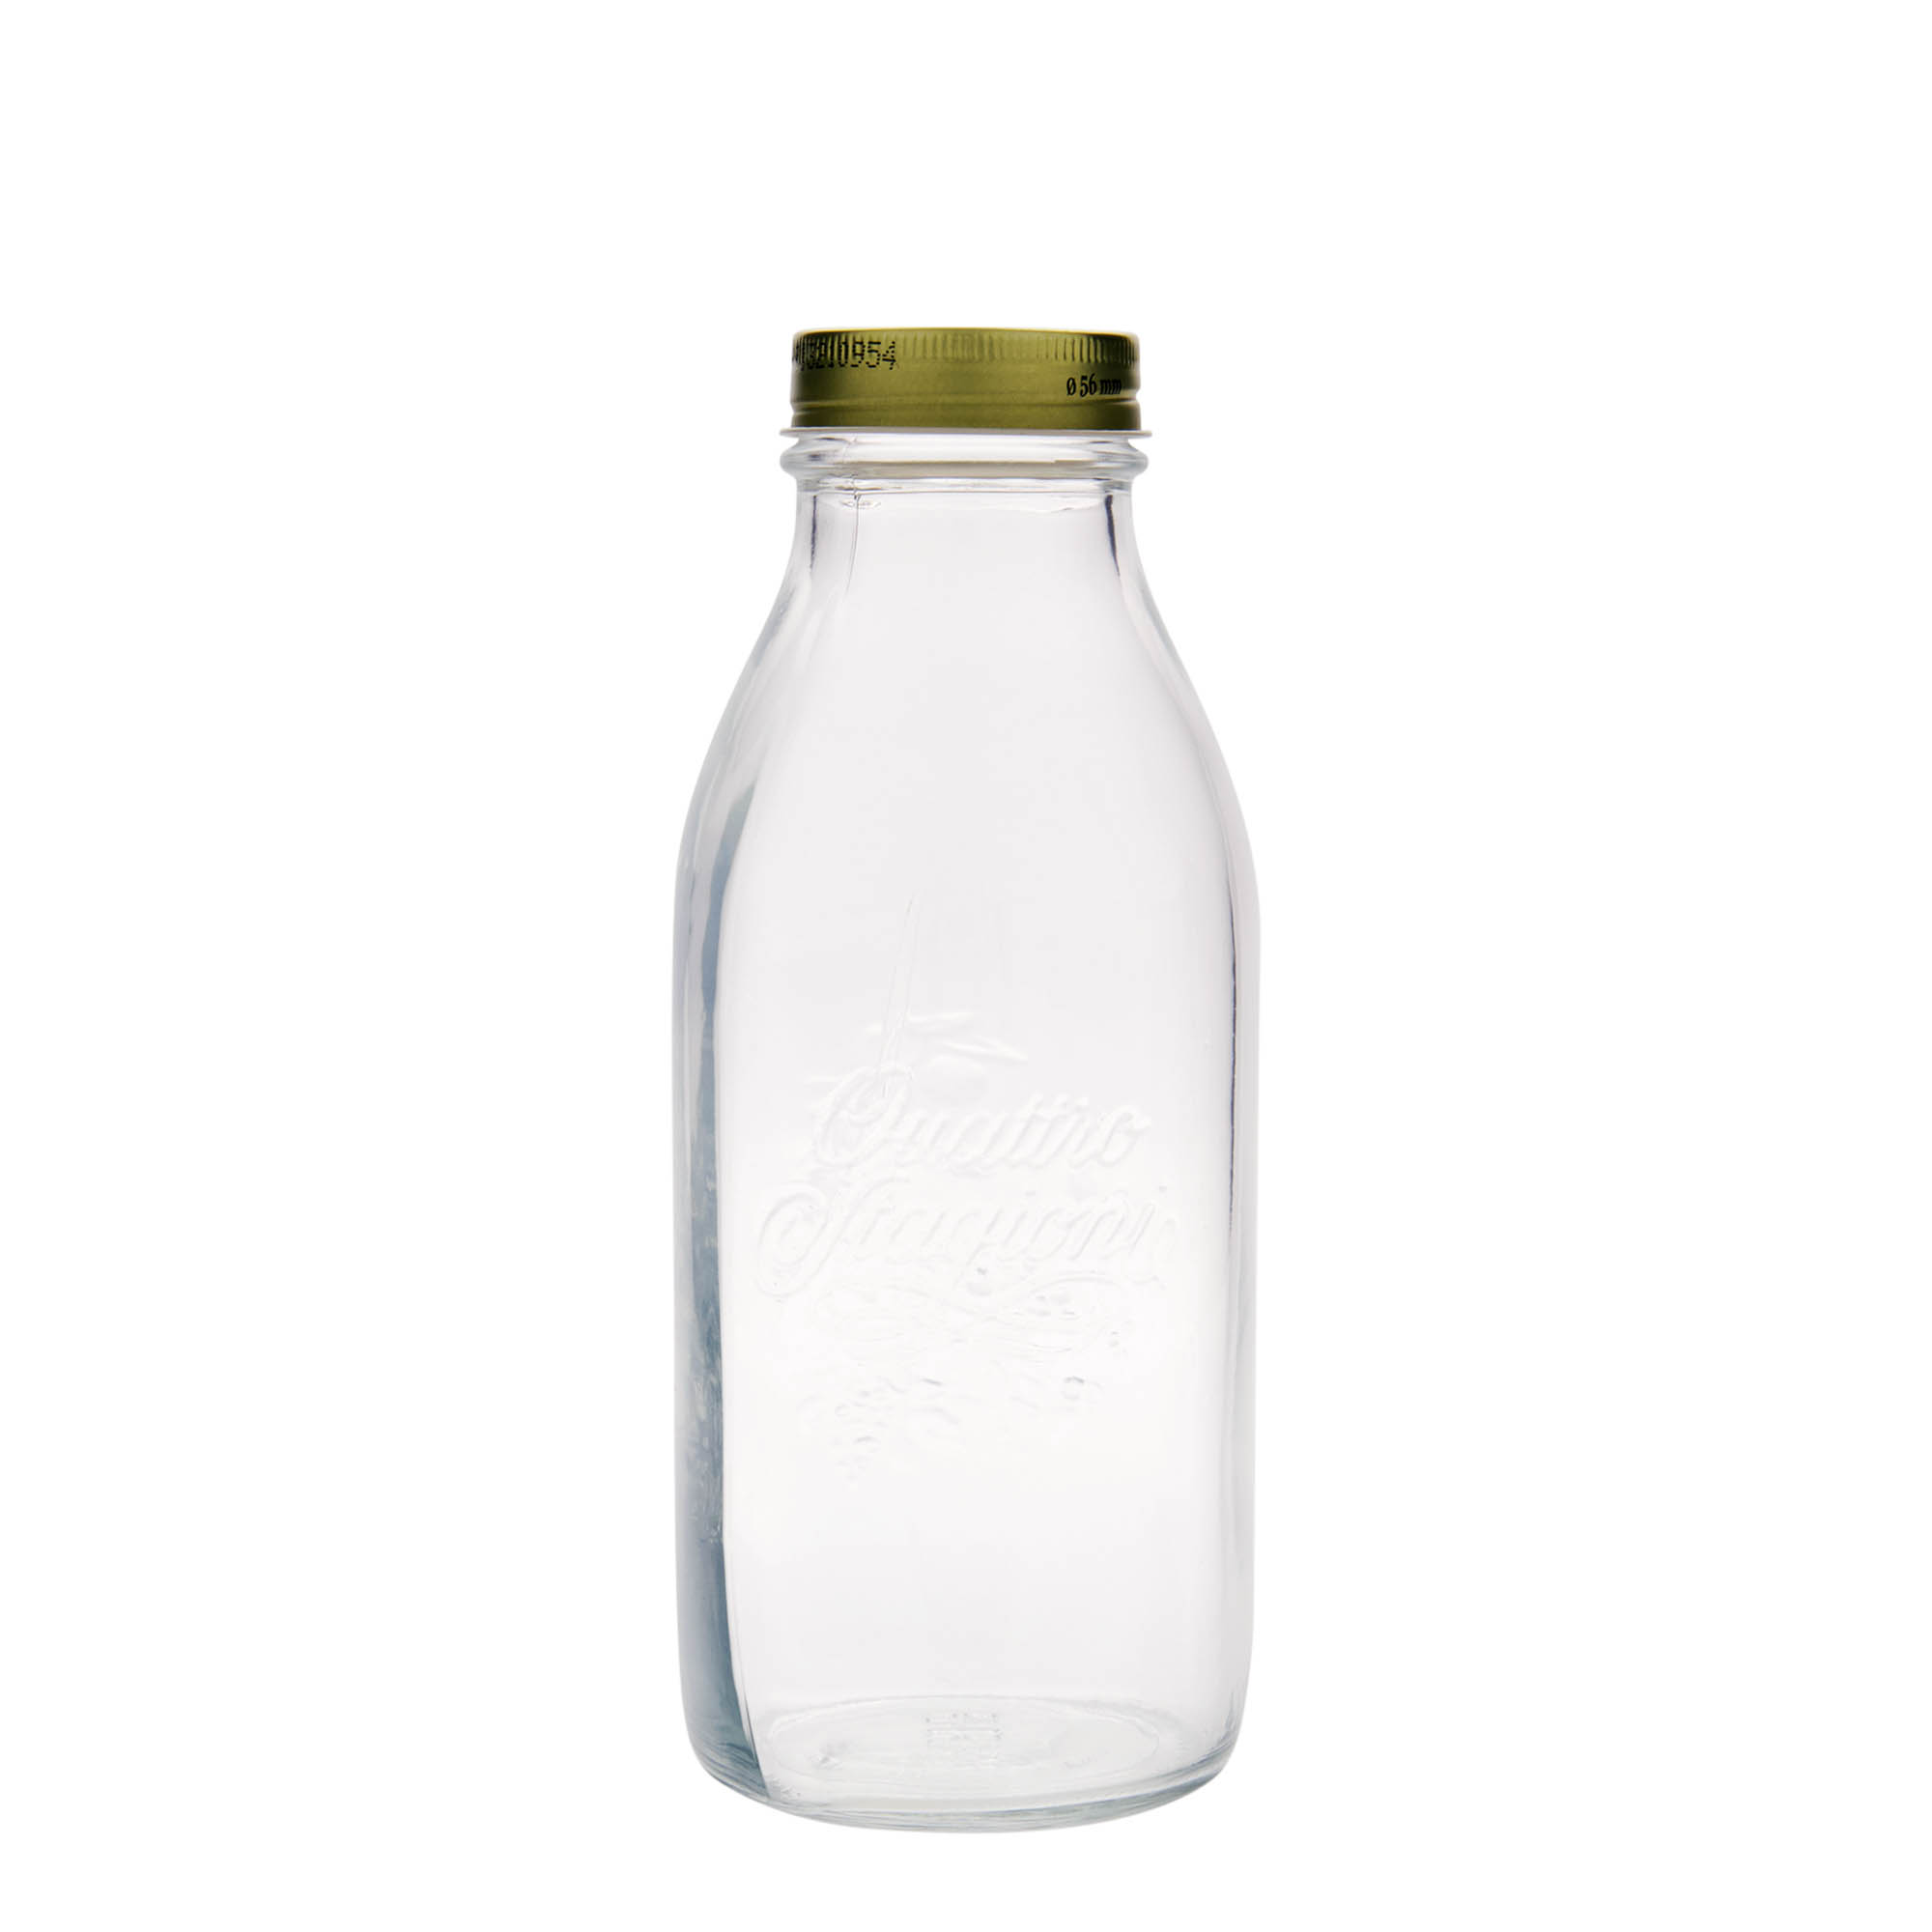 1,000 ml glass bottle 'Quattro Stagioni', closure: screw cap